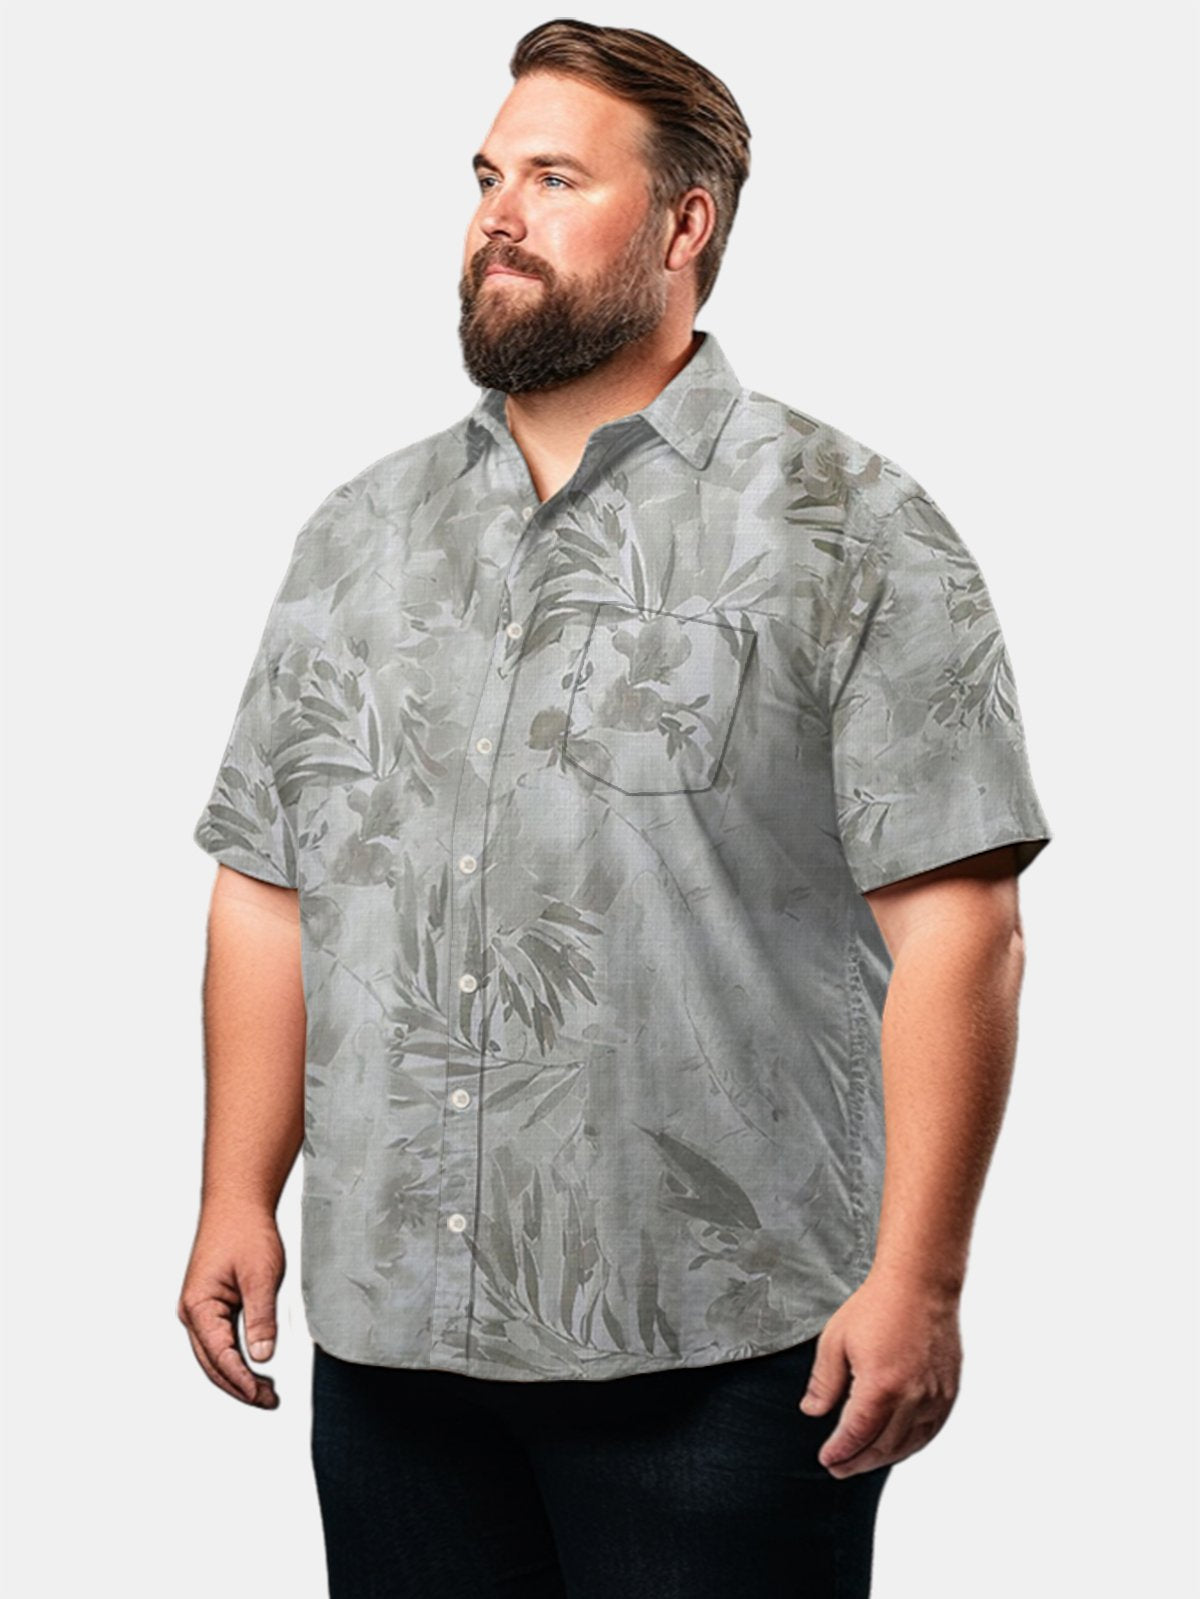 Big & Tall Hawaii Plant Free Seersucker Men's Shirts